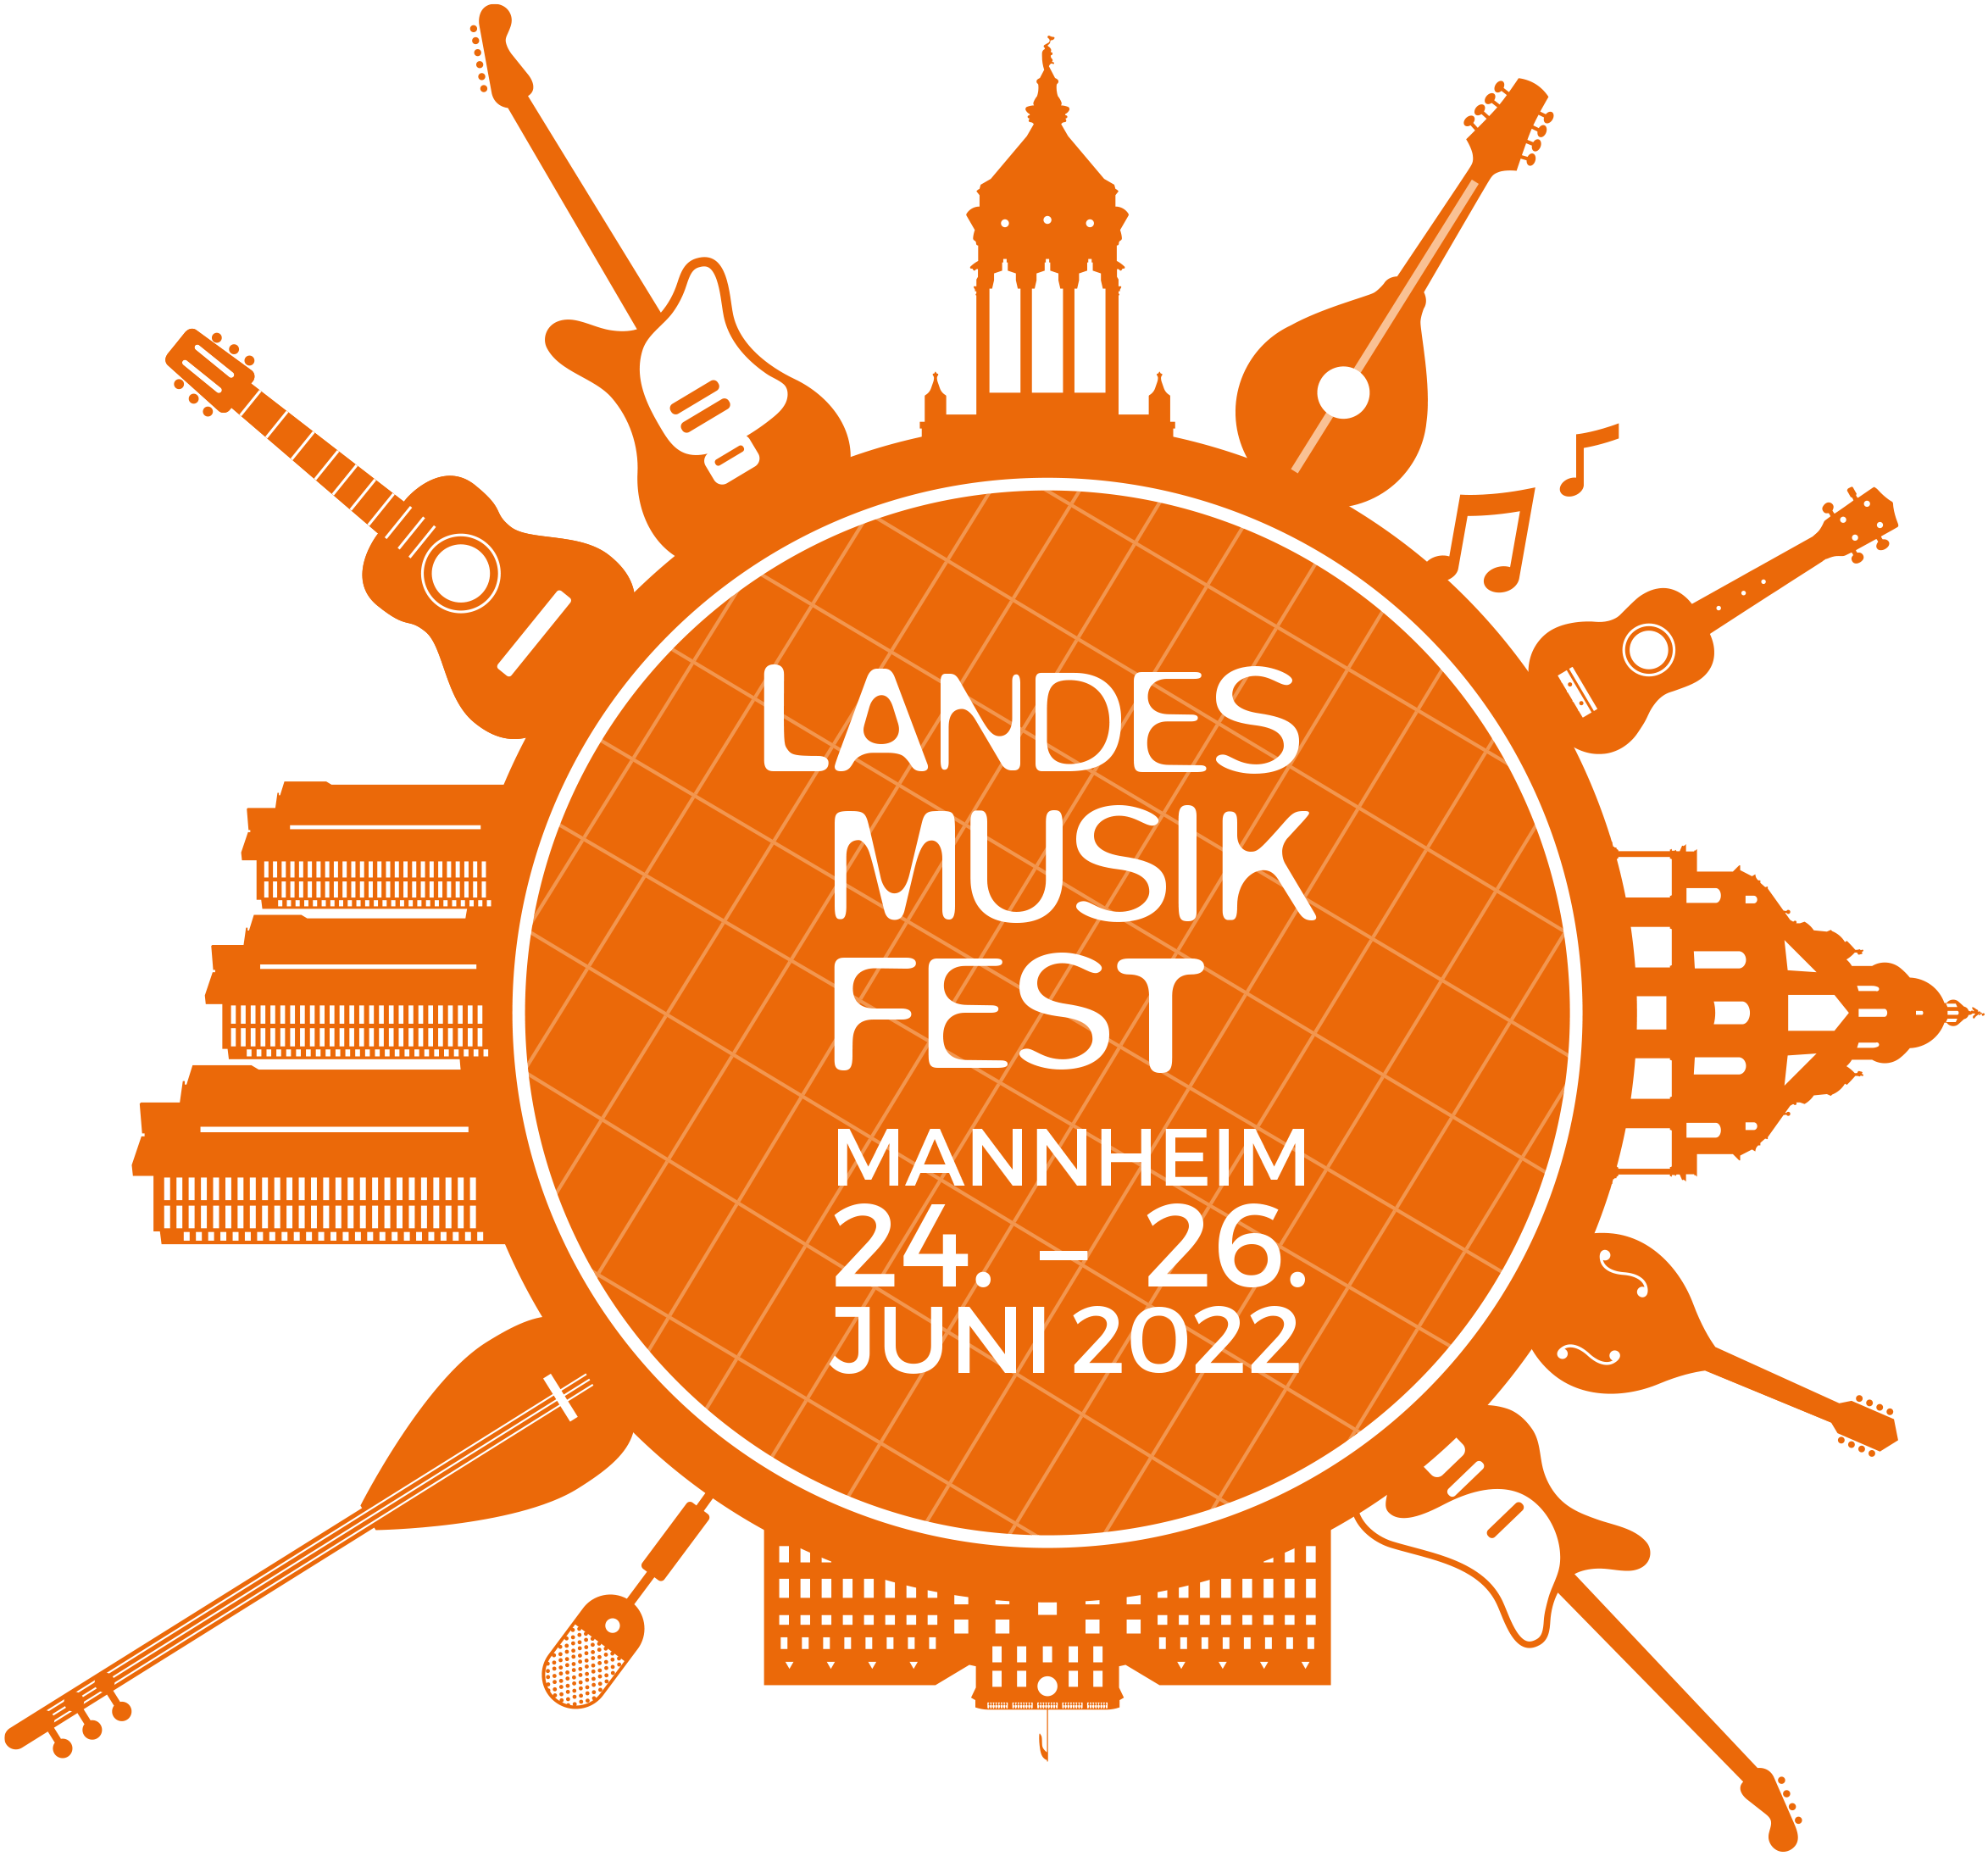 Landesmusikfest Mannheim